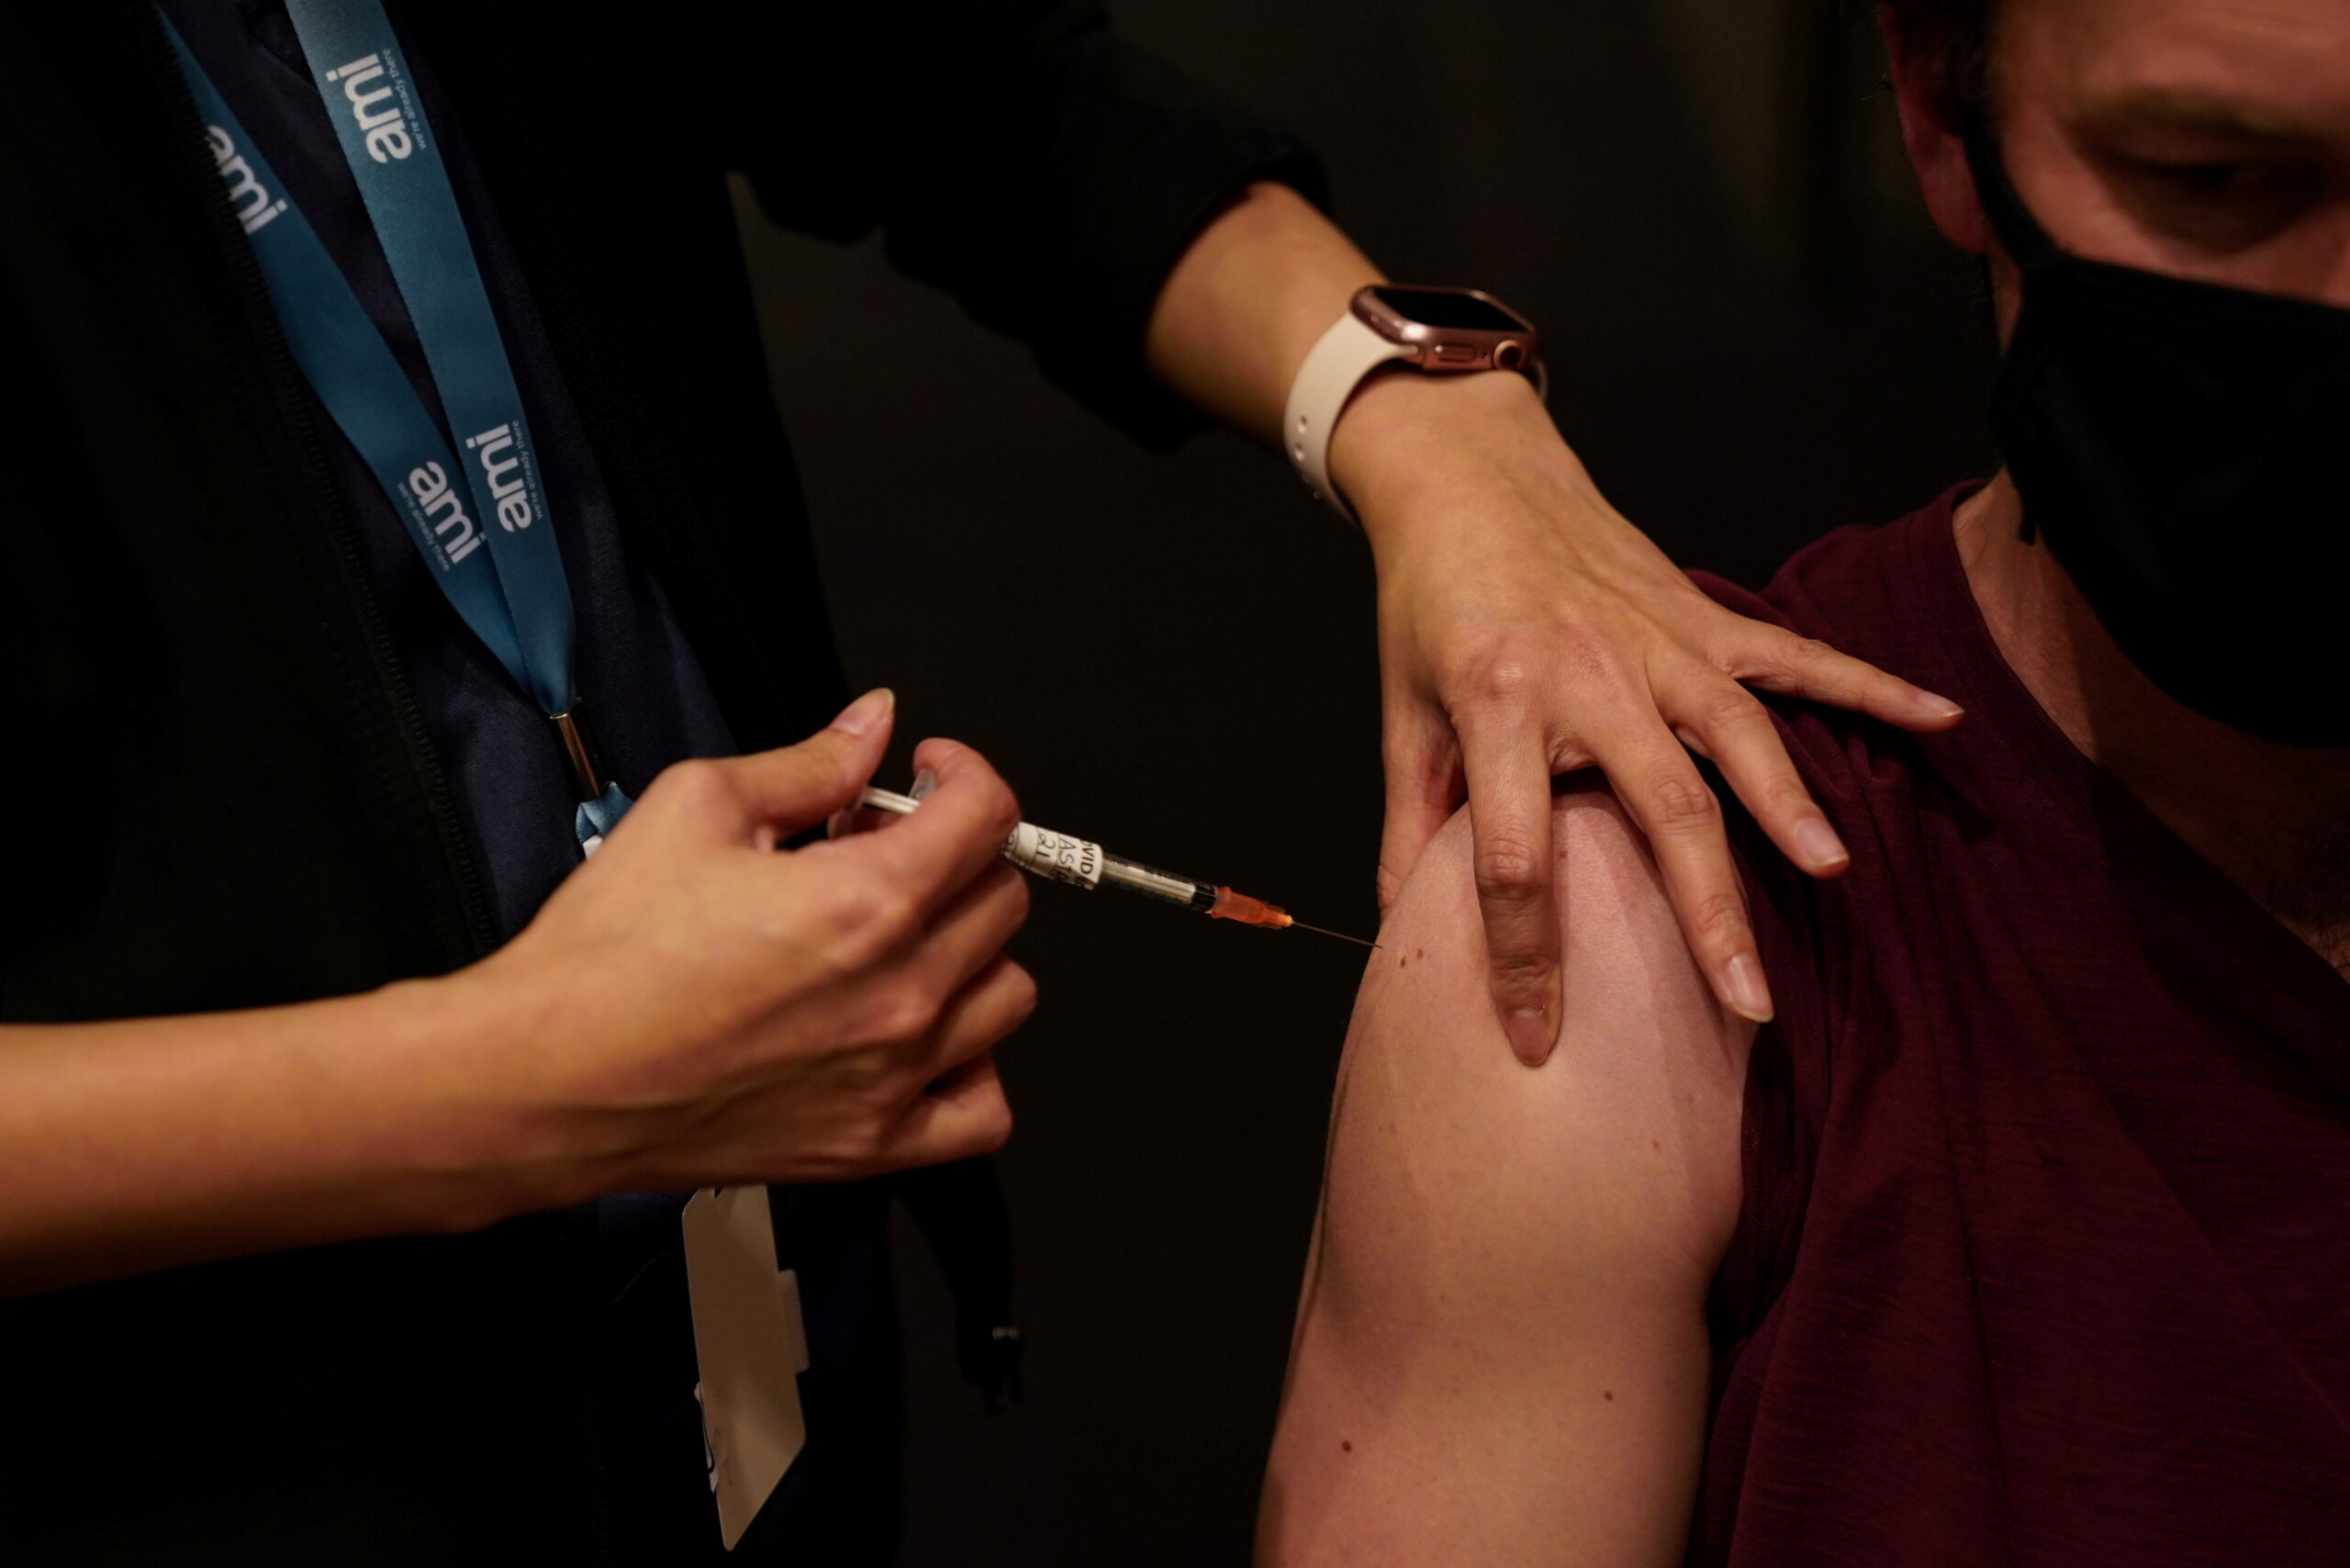 ออสเตรเลีย ยืมวัคซีนประเทศอื่น แก้ปัญหาวัคซีนขาดแคลน – ต่างประเทศ